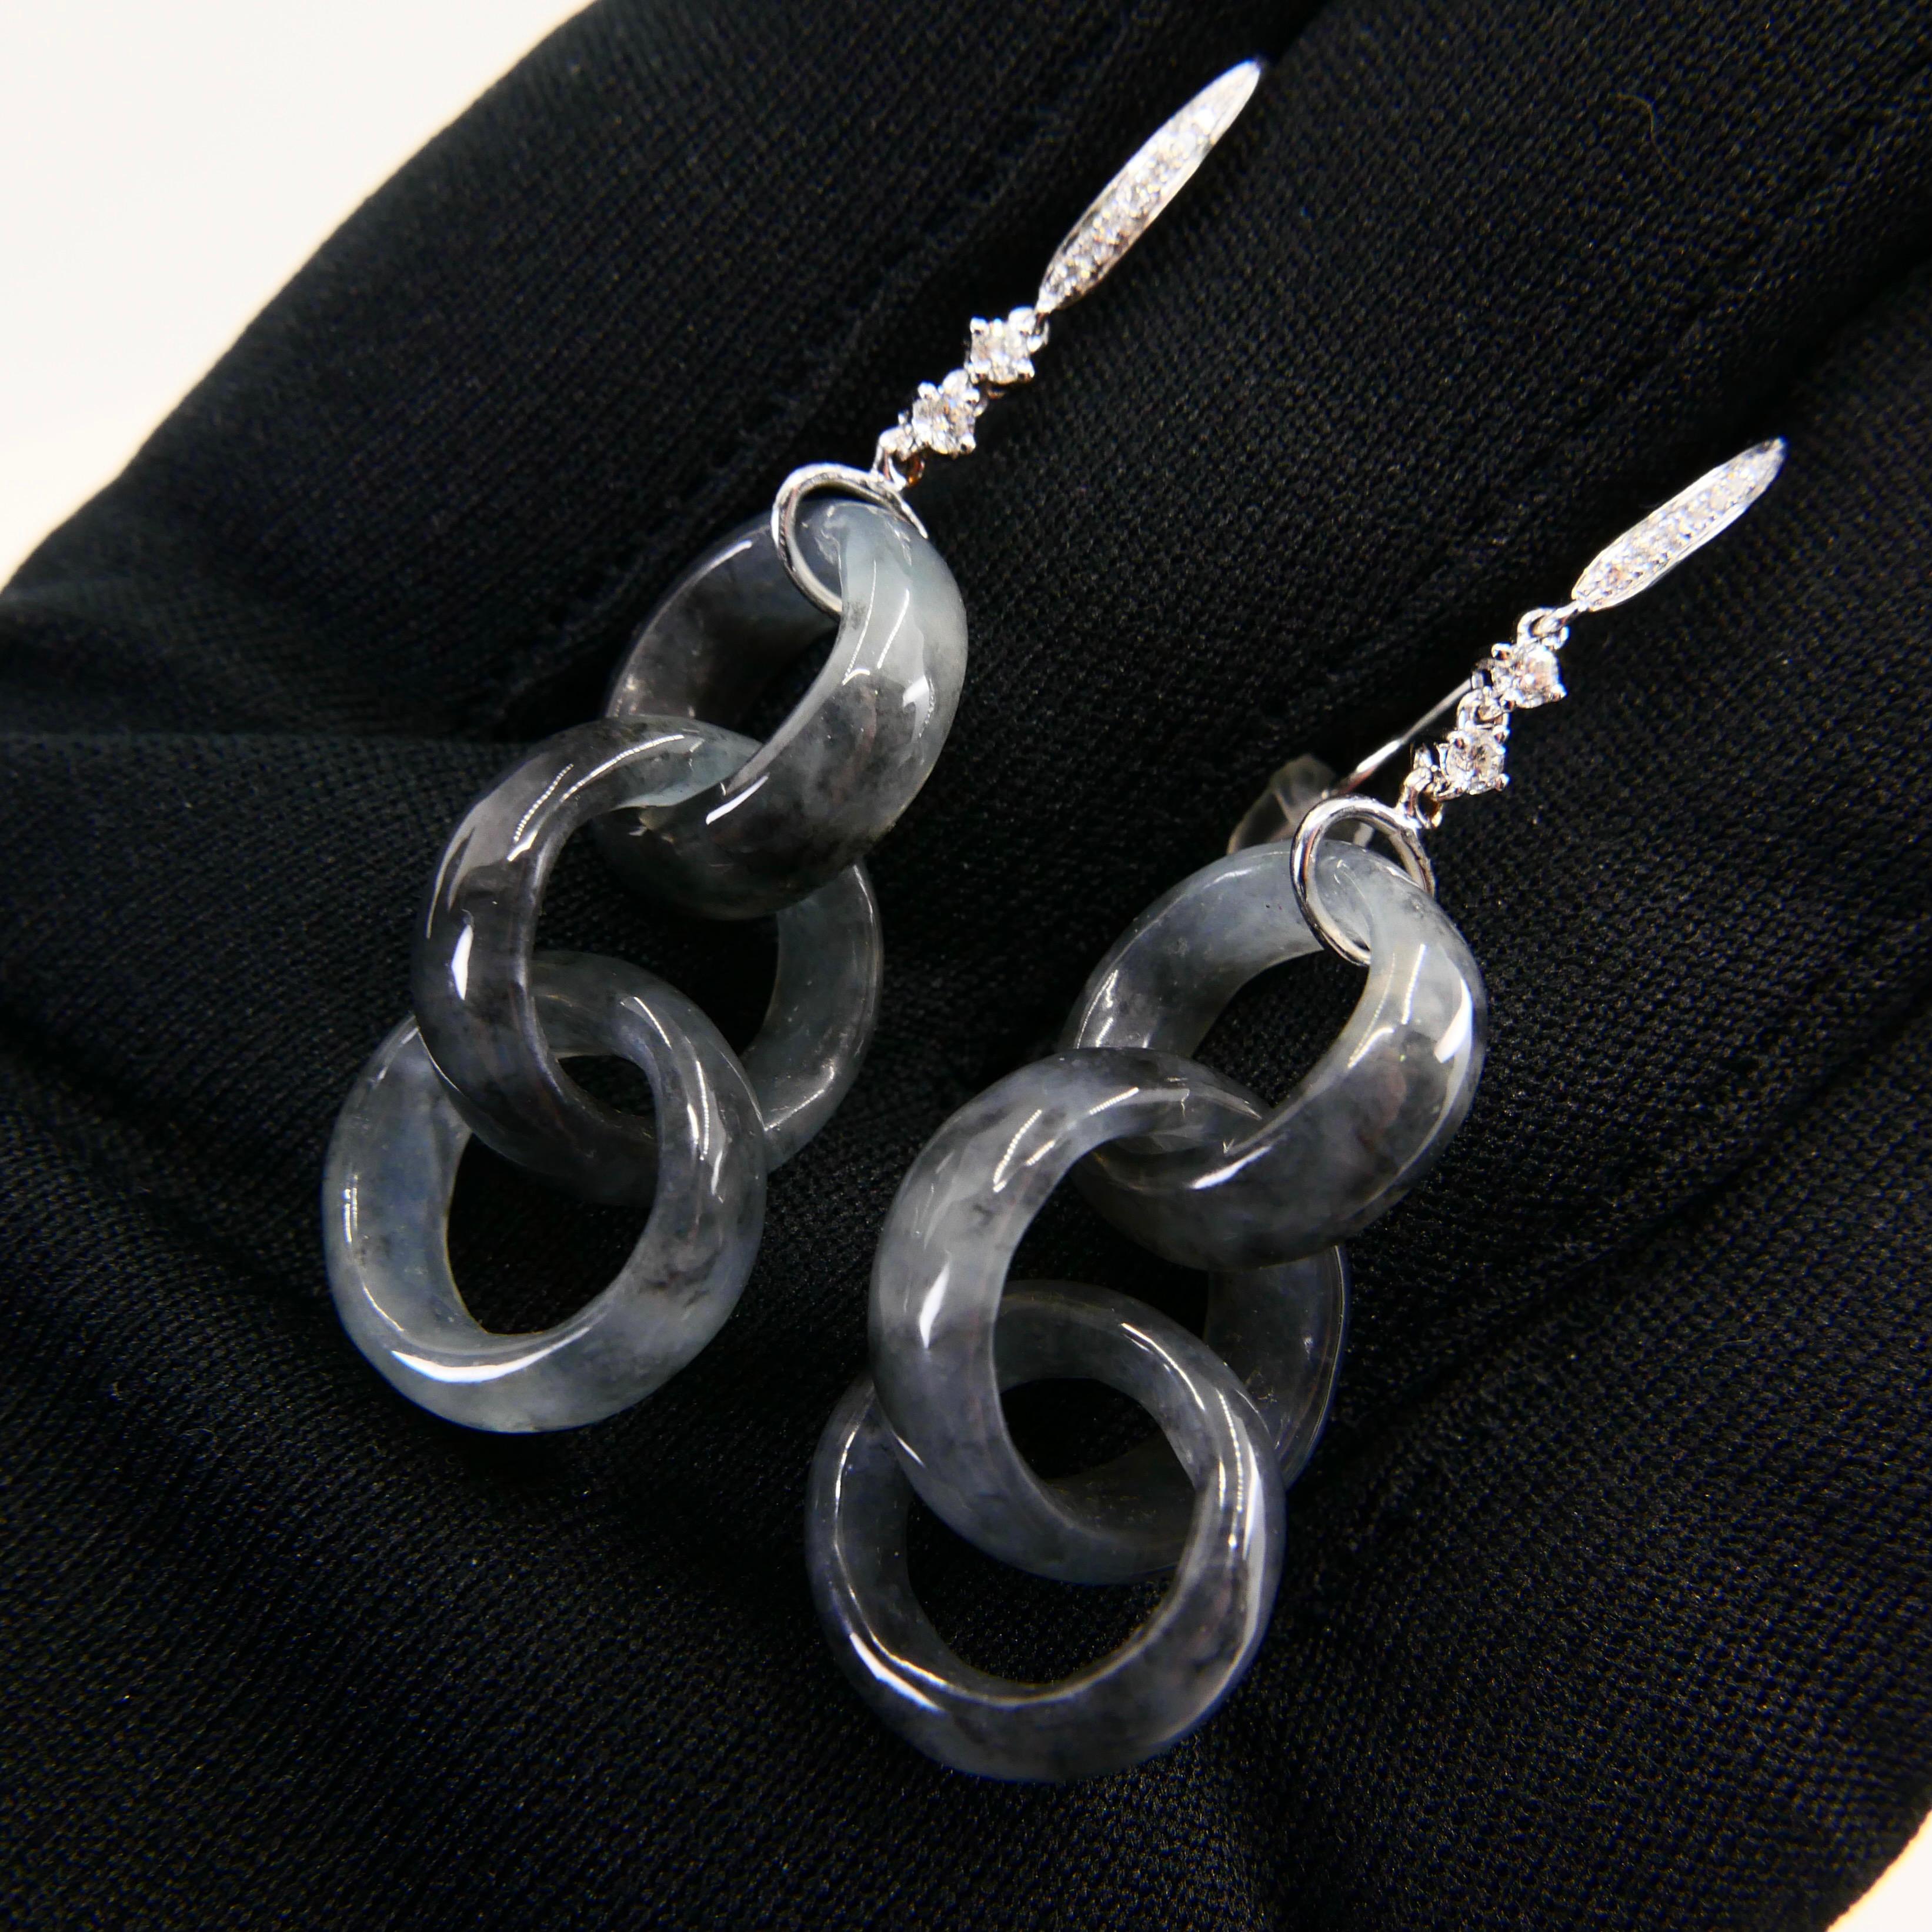 Rough Cut Certified Icy Black Jadeite Jade & Diamond Earrings, Solid Interlocking Links